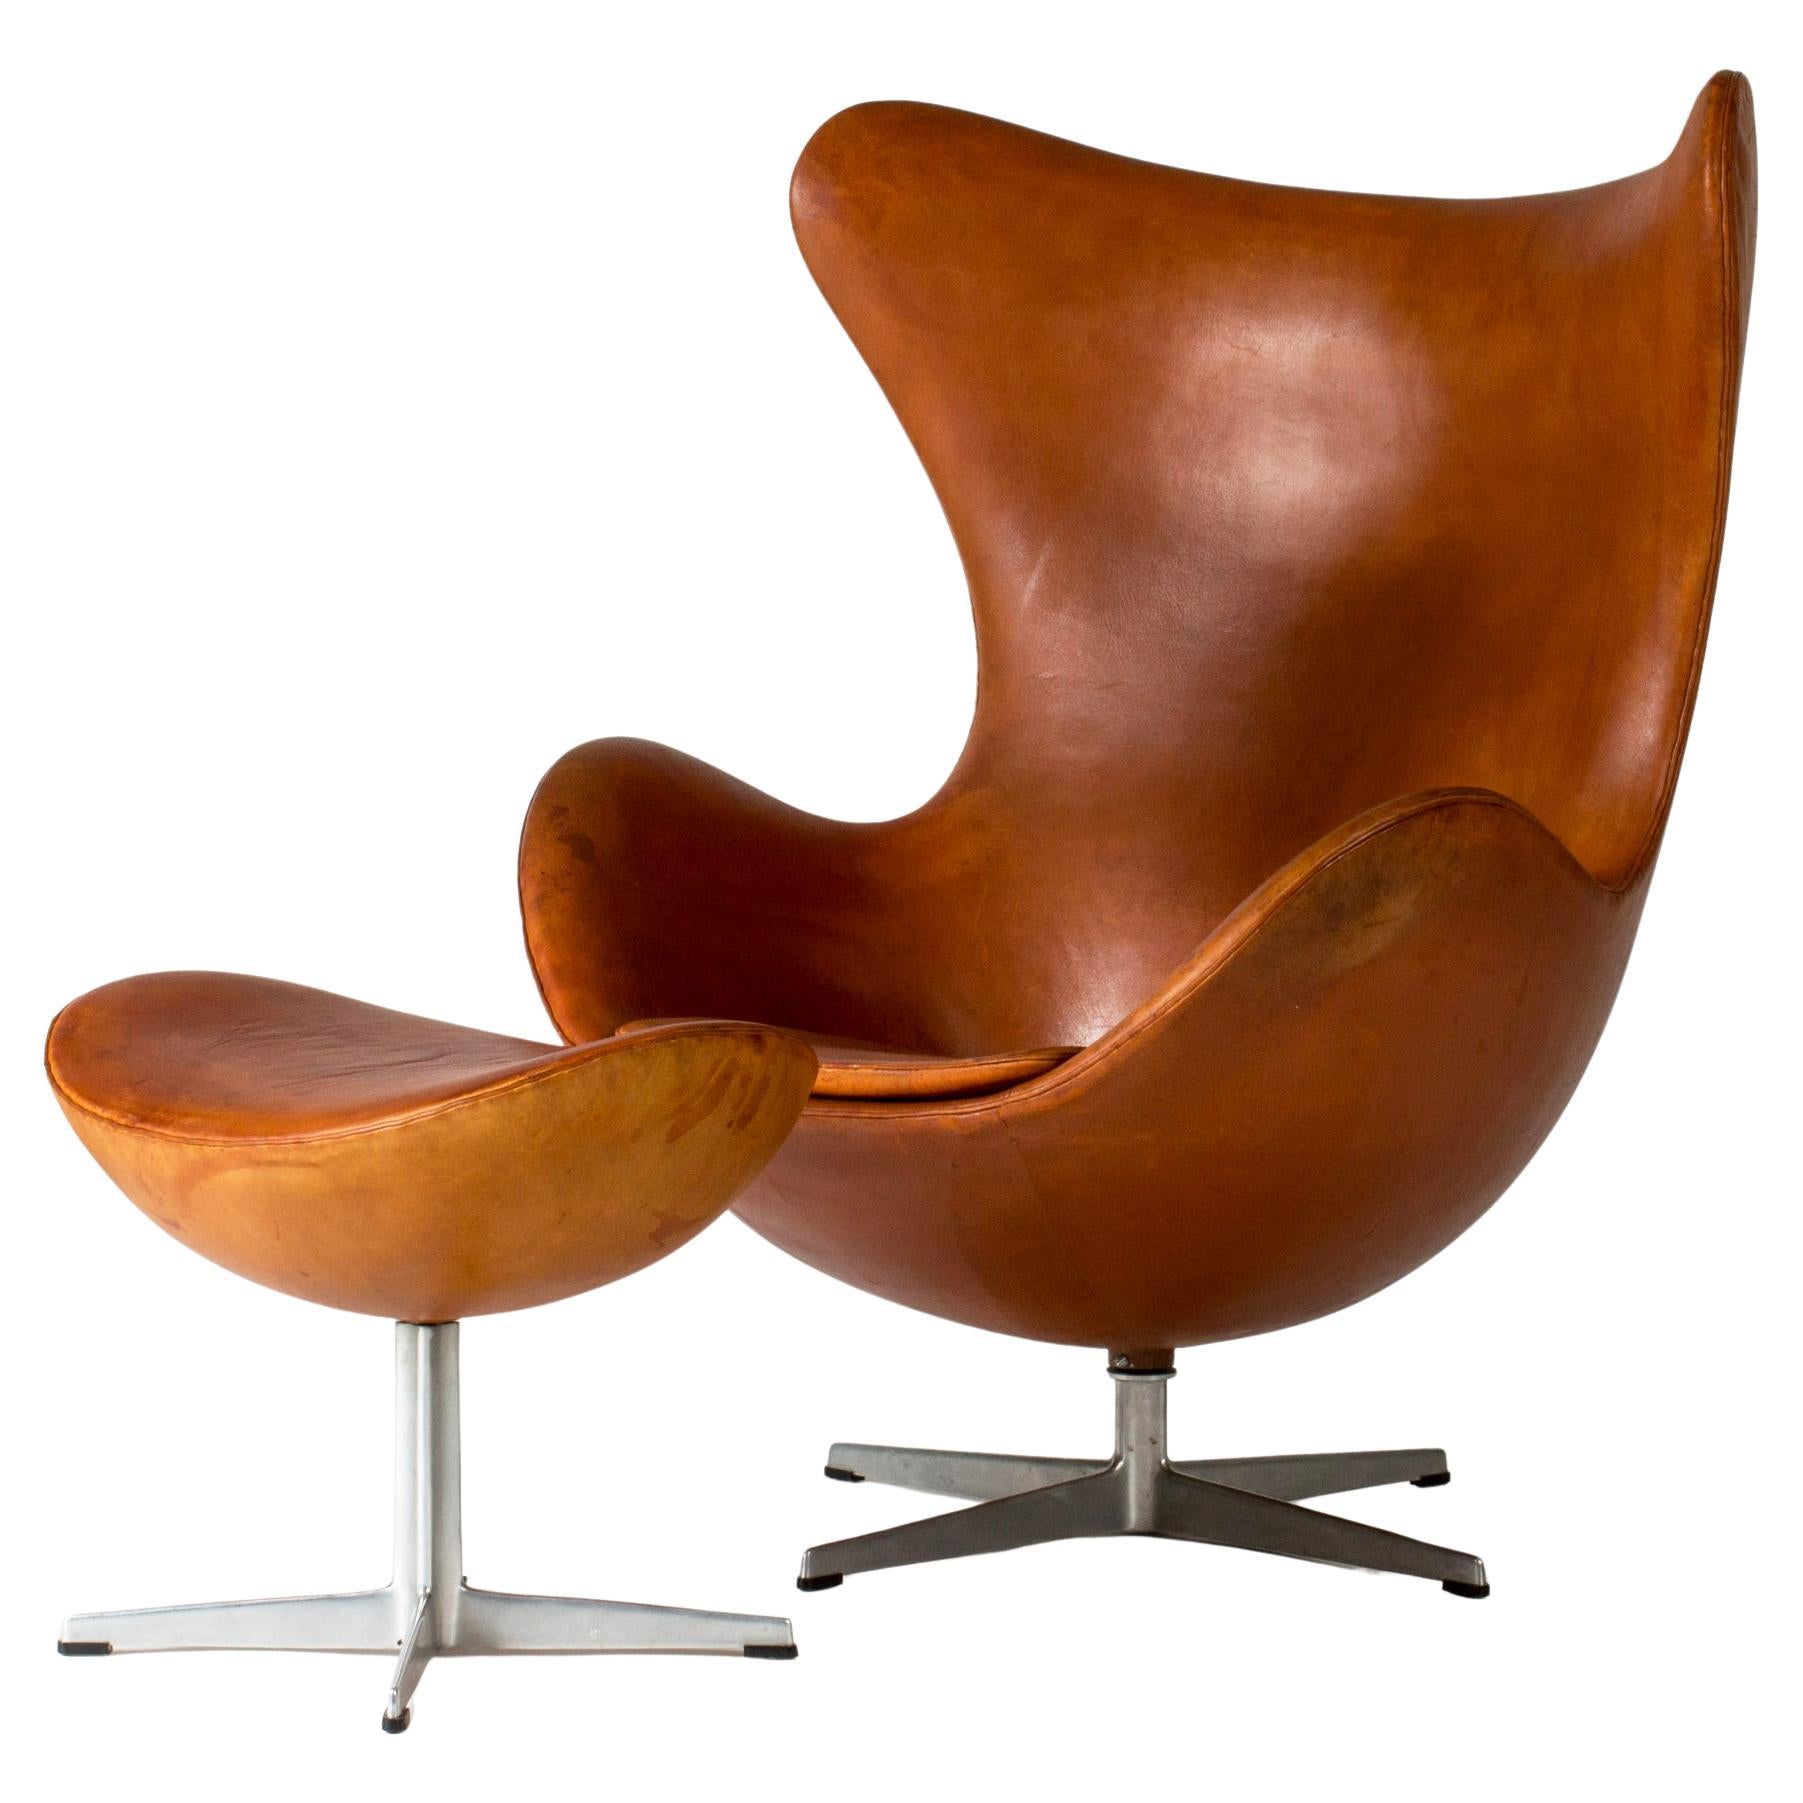 Chaise longue "Egg" et ottoman, Arne Jacobsen, Danemark, années 1950, The Moderns Modernity